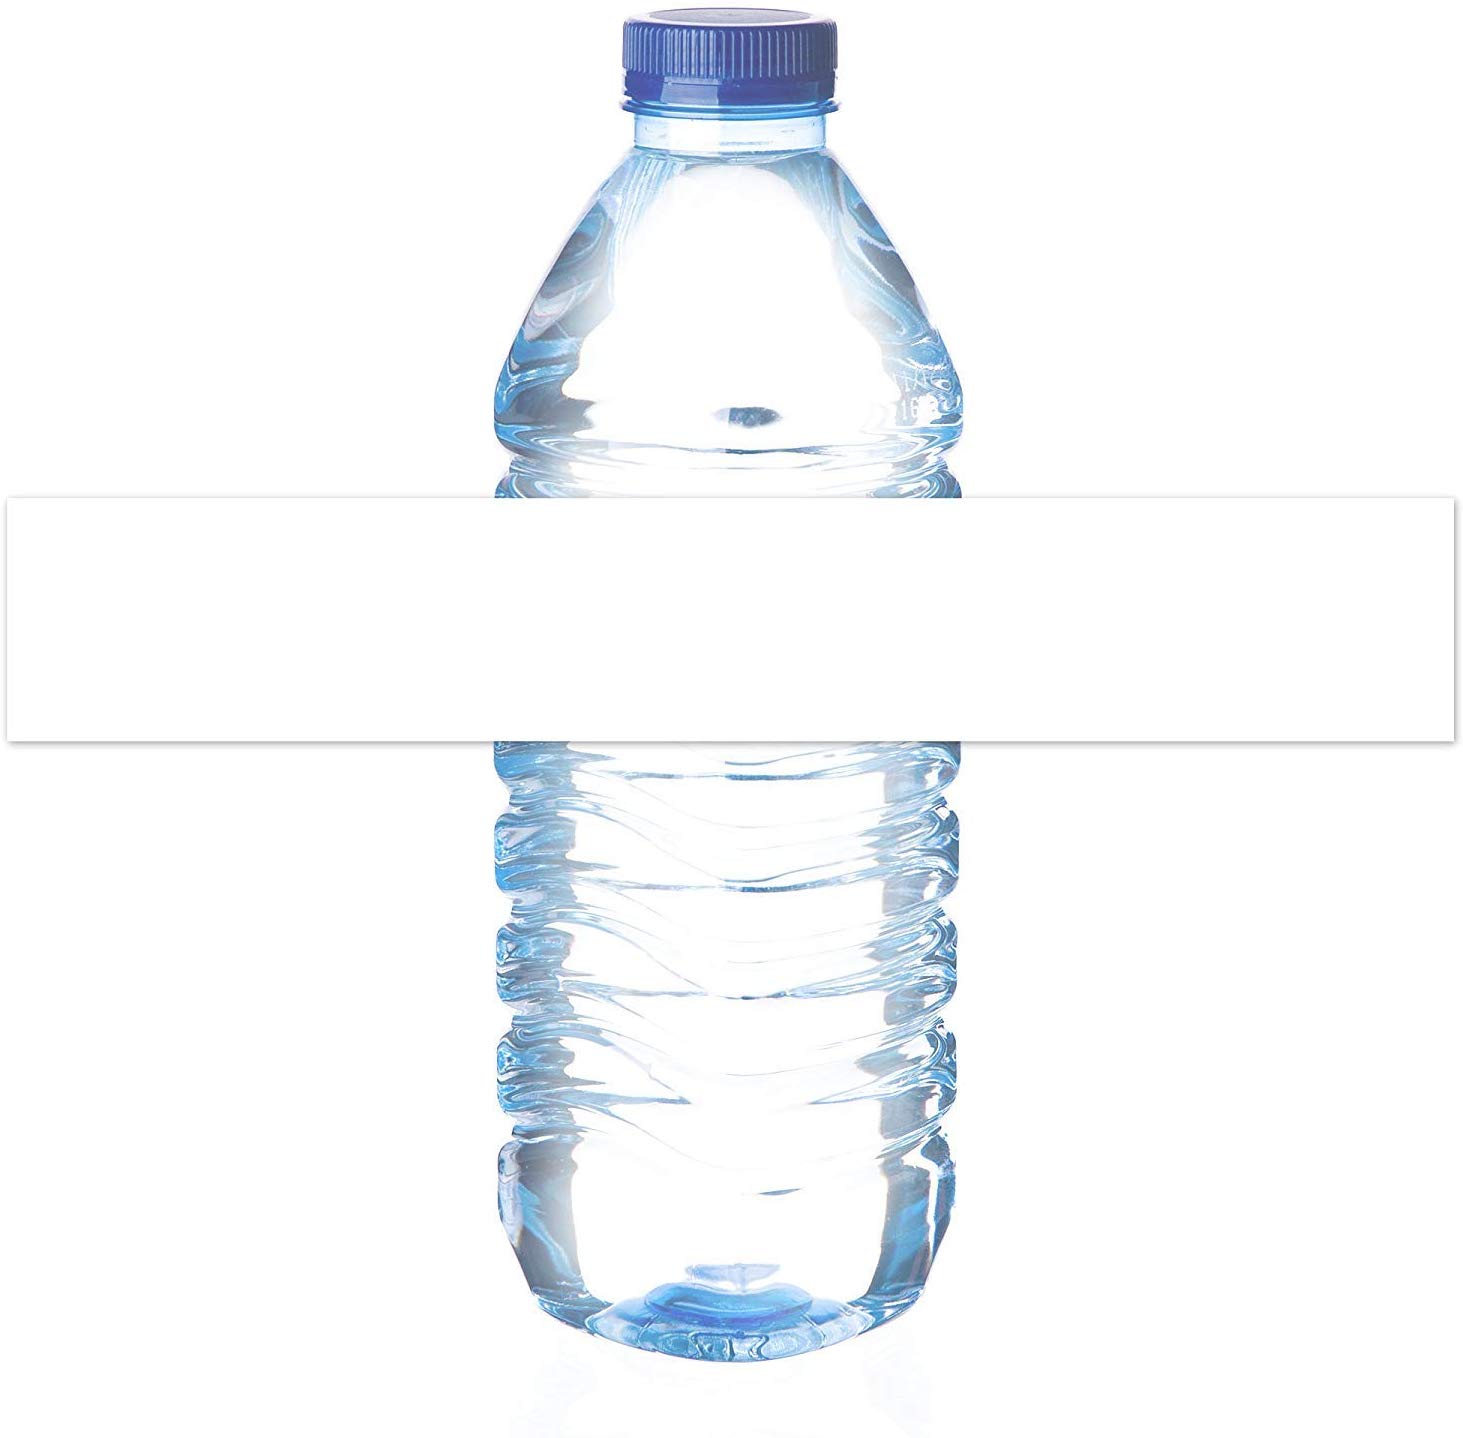 MrLabelWaterproof Blank Water Bottle Labels for A4